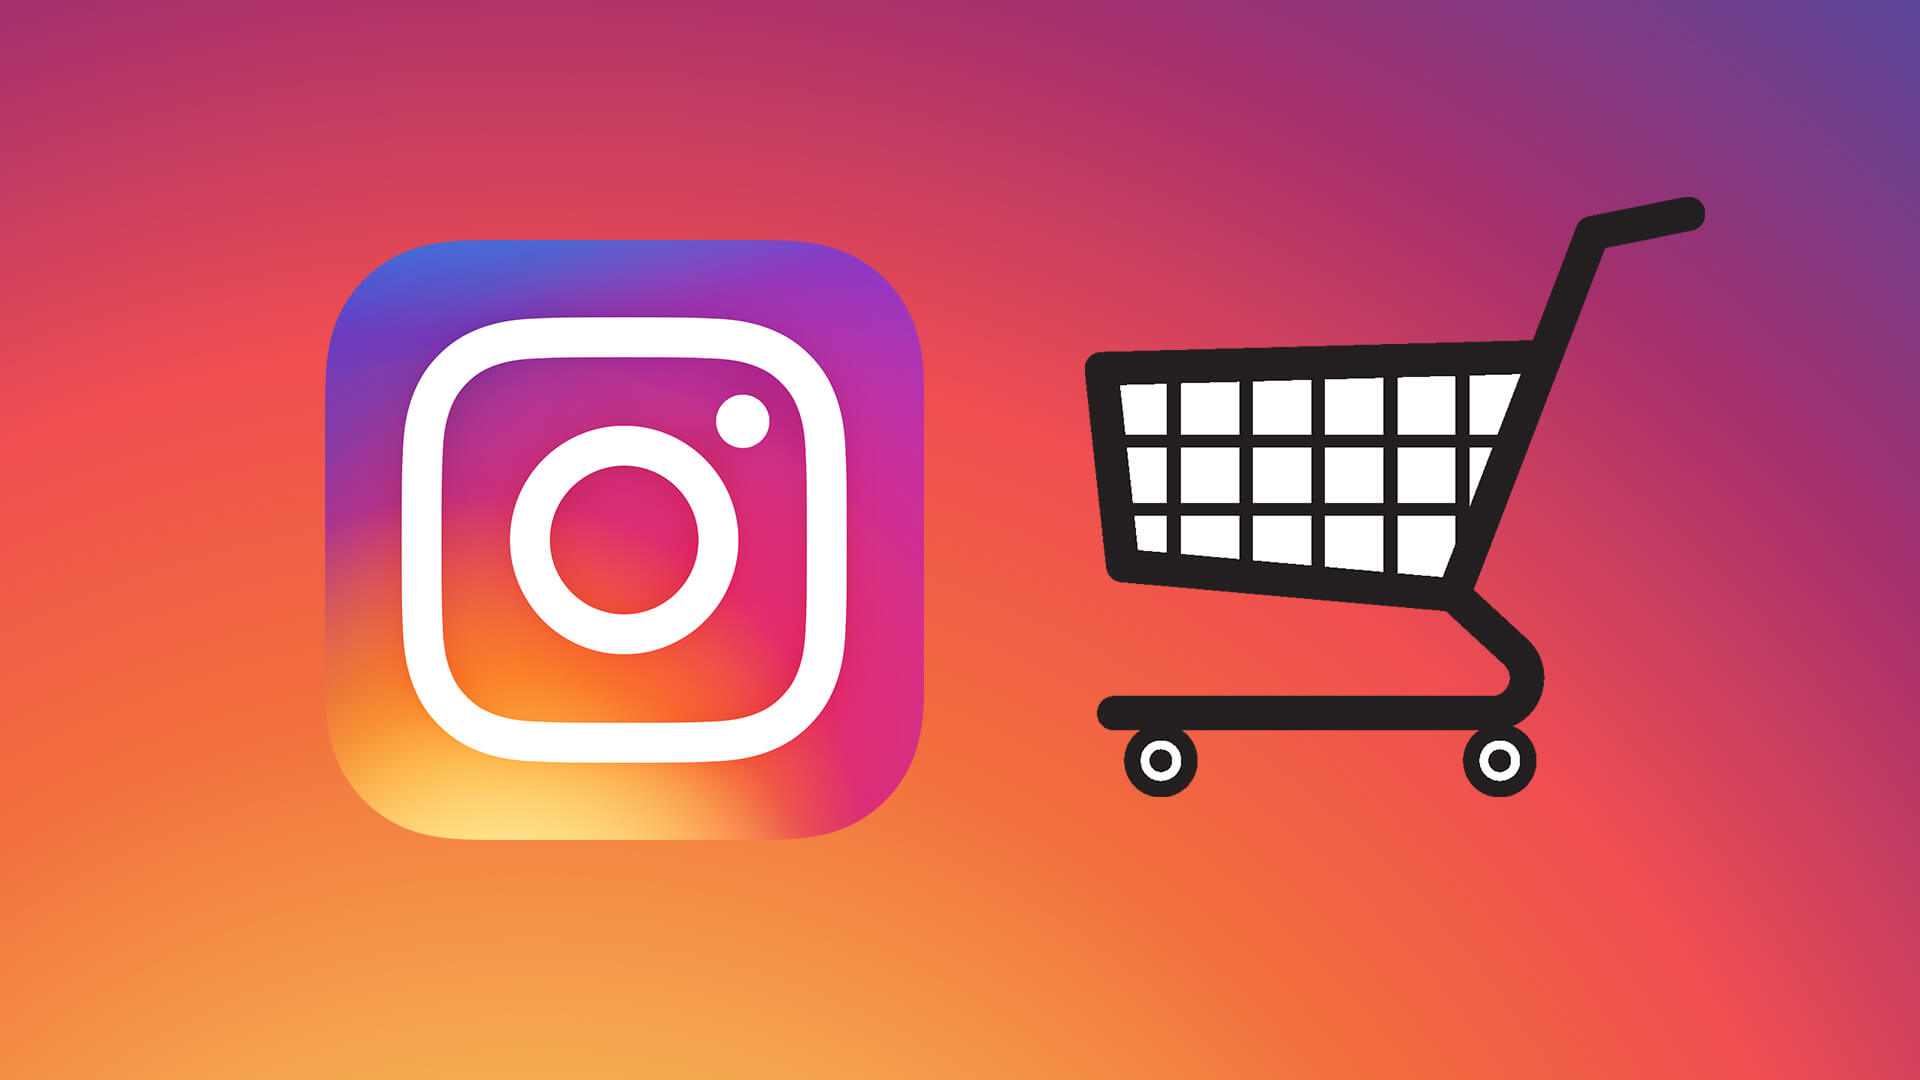 Comment la nouvelle refonte d’Instagram stimule les vidéos courtes et les achats intégrés